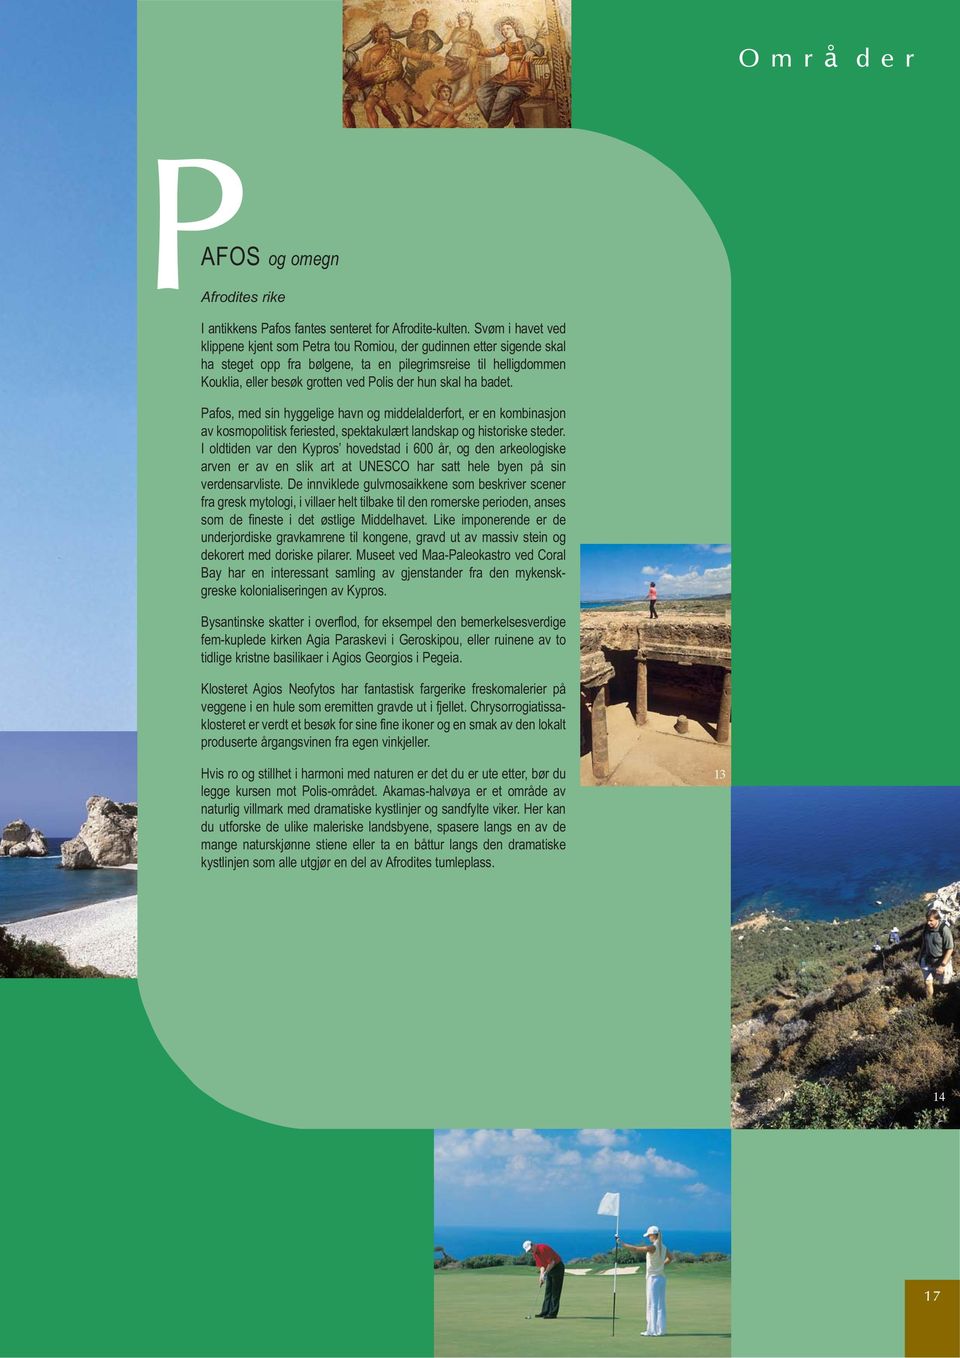 skal ha badet. Pafos, med sin hyggelige havn og middelalderfort, er en kombinasjon av kosmopolitisk feriested, spektakulært landskap og historiske steder.